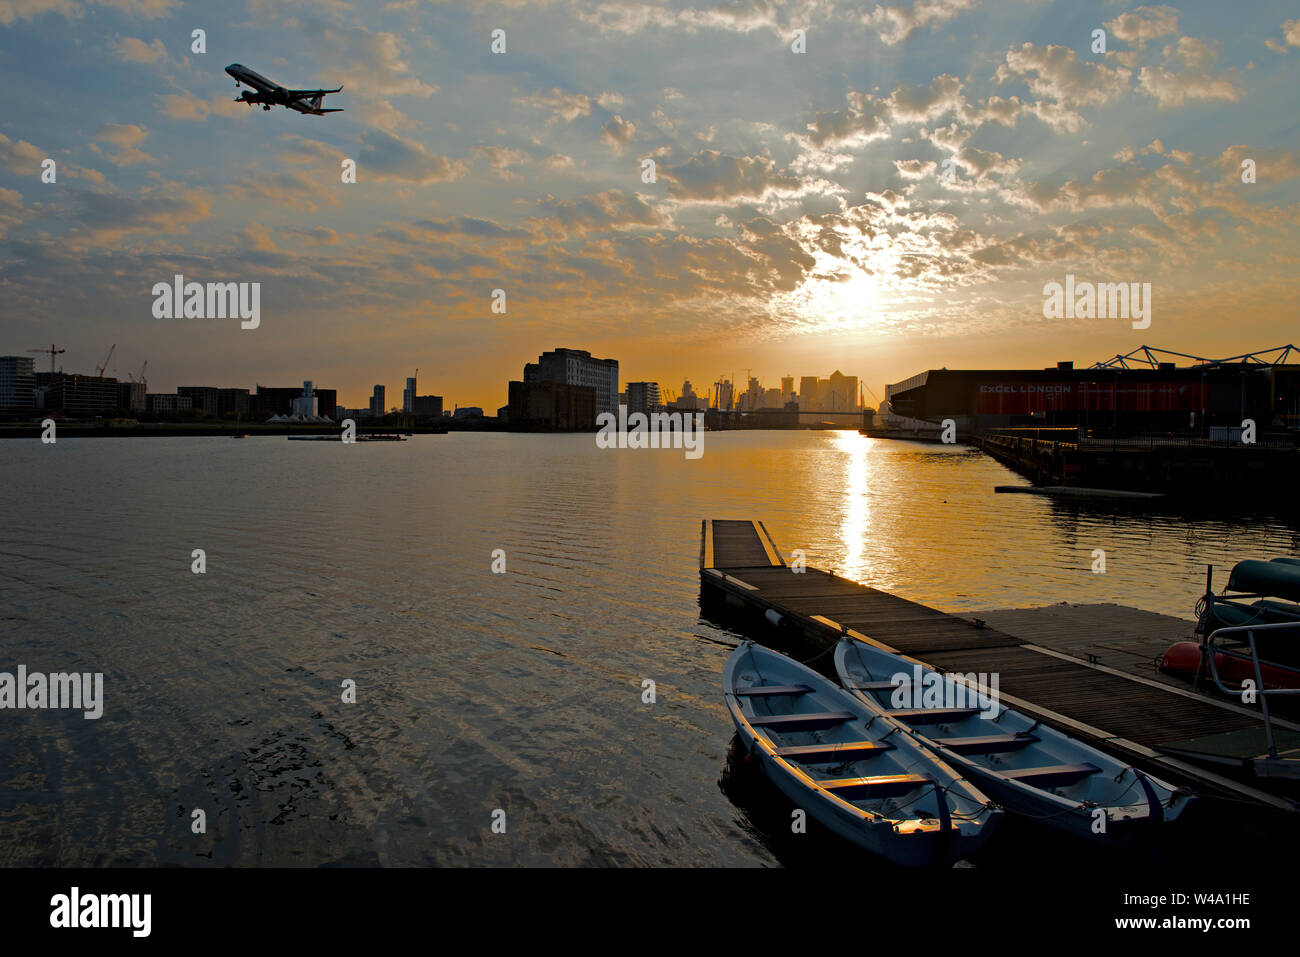 Sonnenuntergang über dem Emirat Royal Docks. Blick nach Westen vom Connaught Bridge in Richtung Central London. Ein Flugzeug im Endanflug th London City Airport Stockfoto